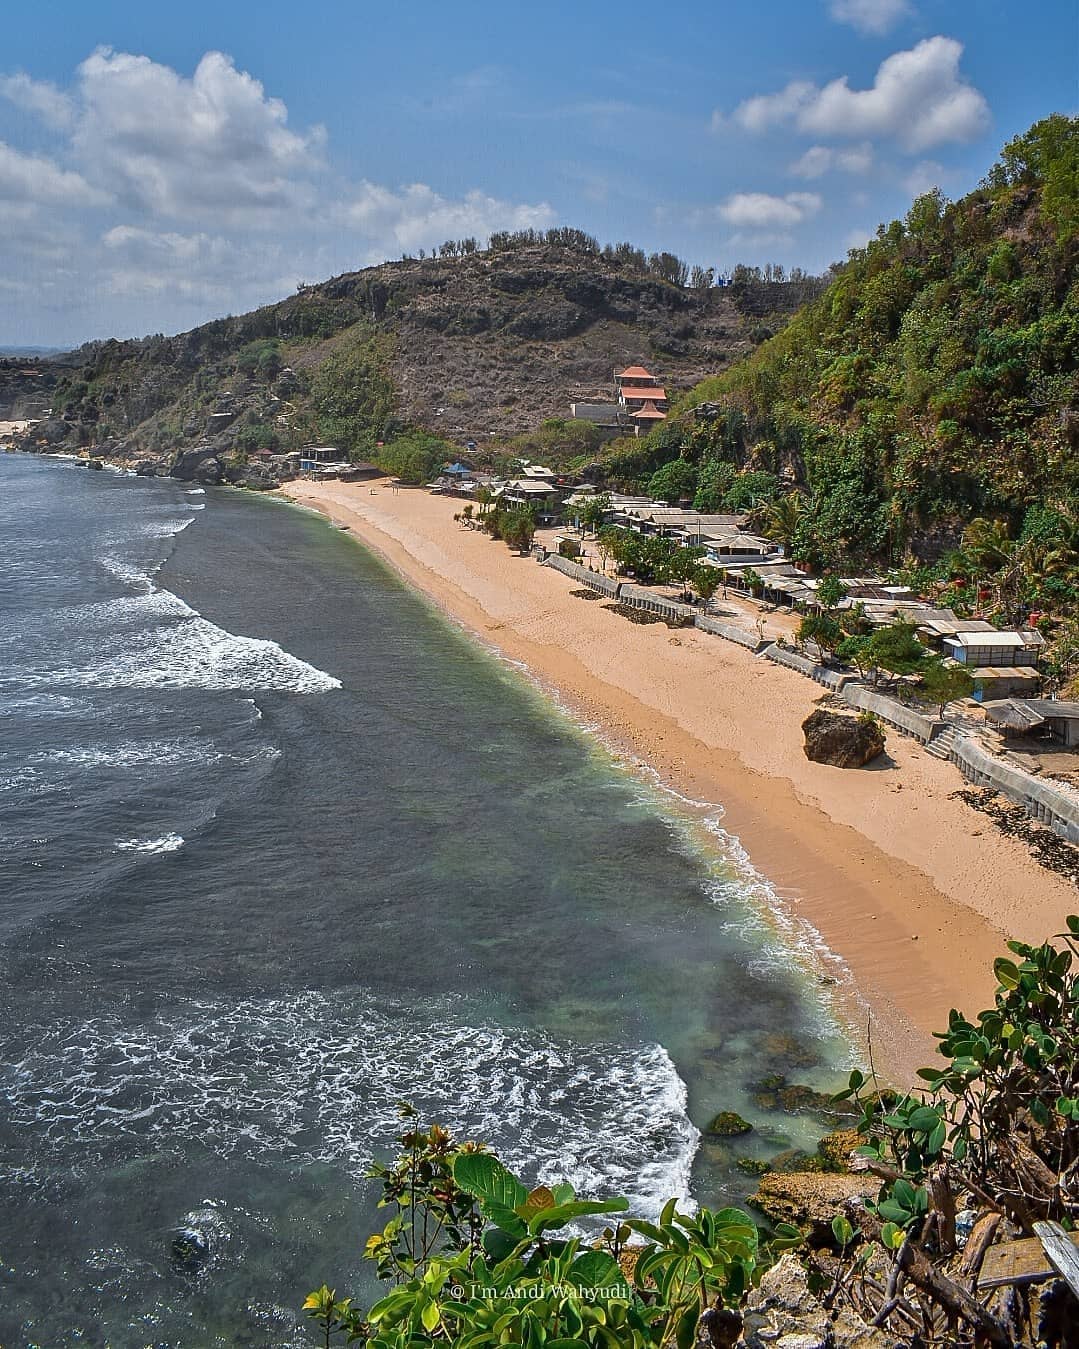 Pantai Pok Tunggal : Harga Tiket, Foto, Lokasi, Fasilitas dan Spot